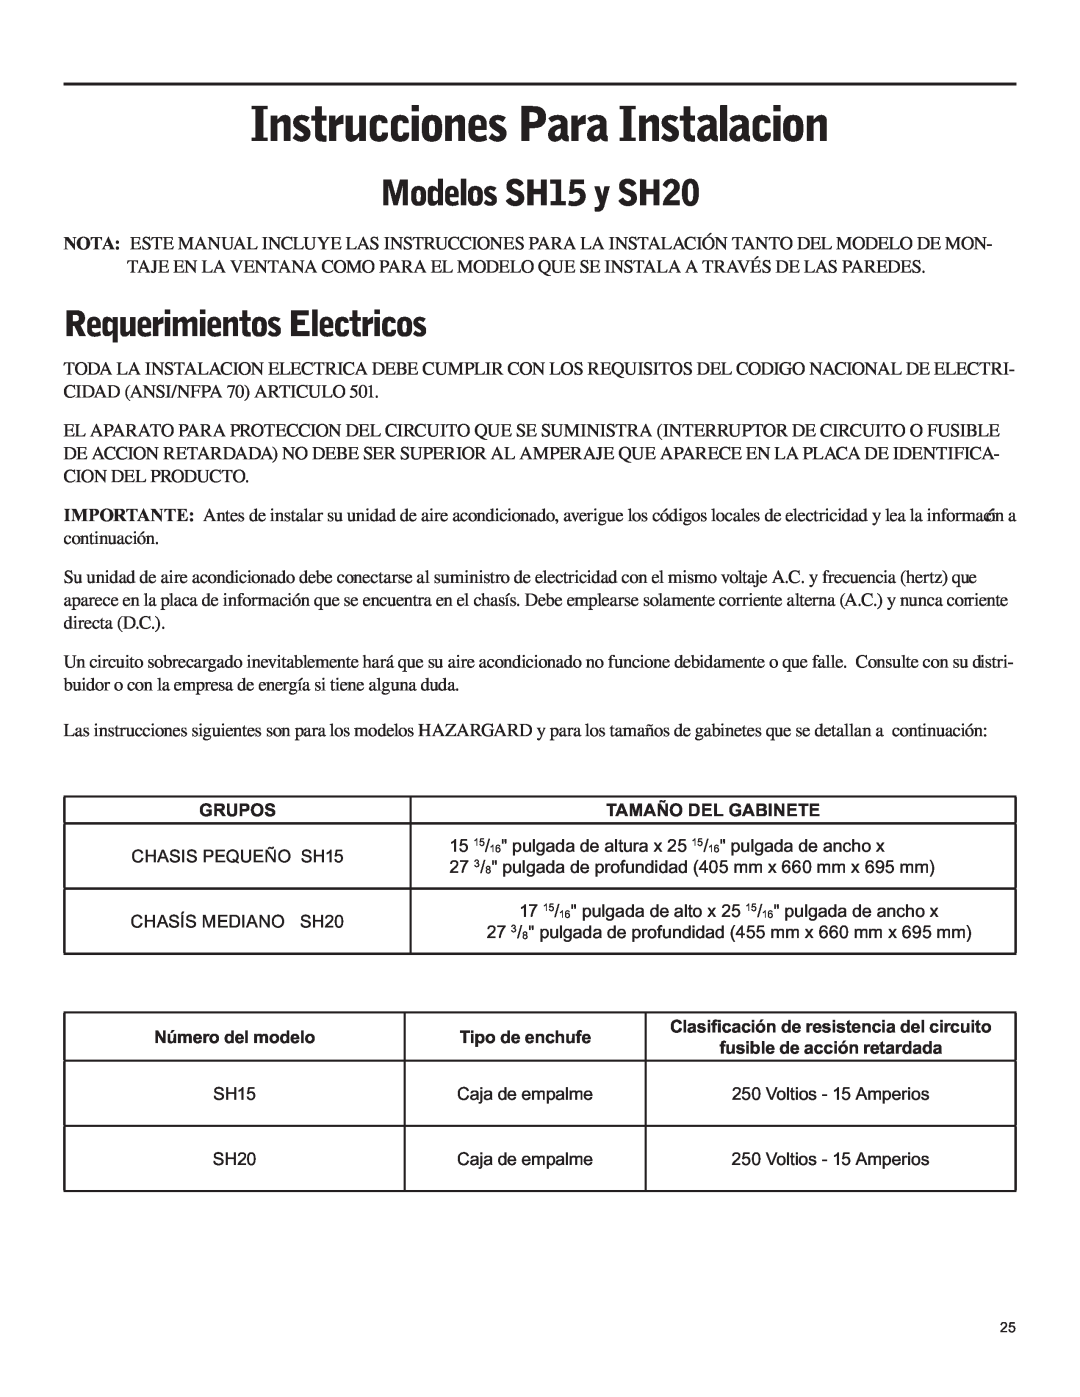 Friedrich operation manual Instrucciones Para Instalacion, Modelos SH15 y SH20, Requerimientos Electricos 